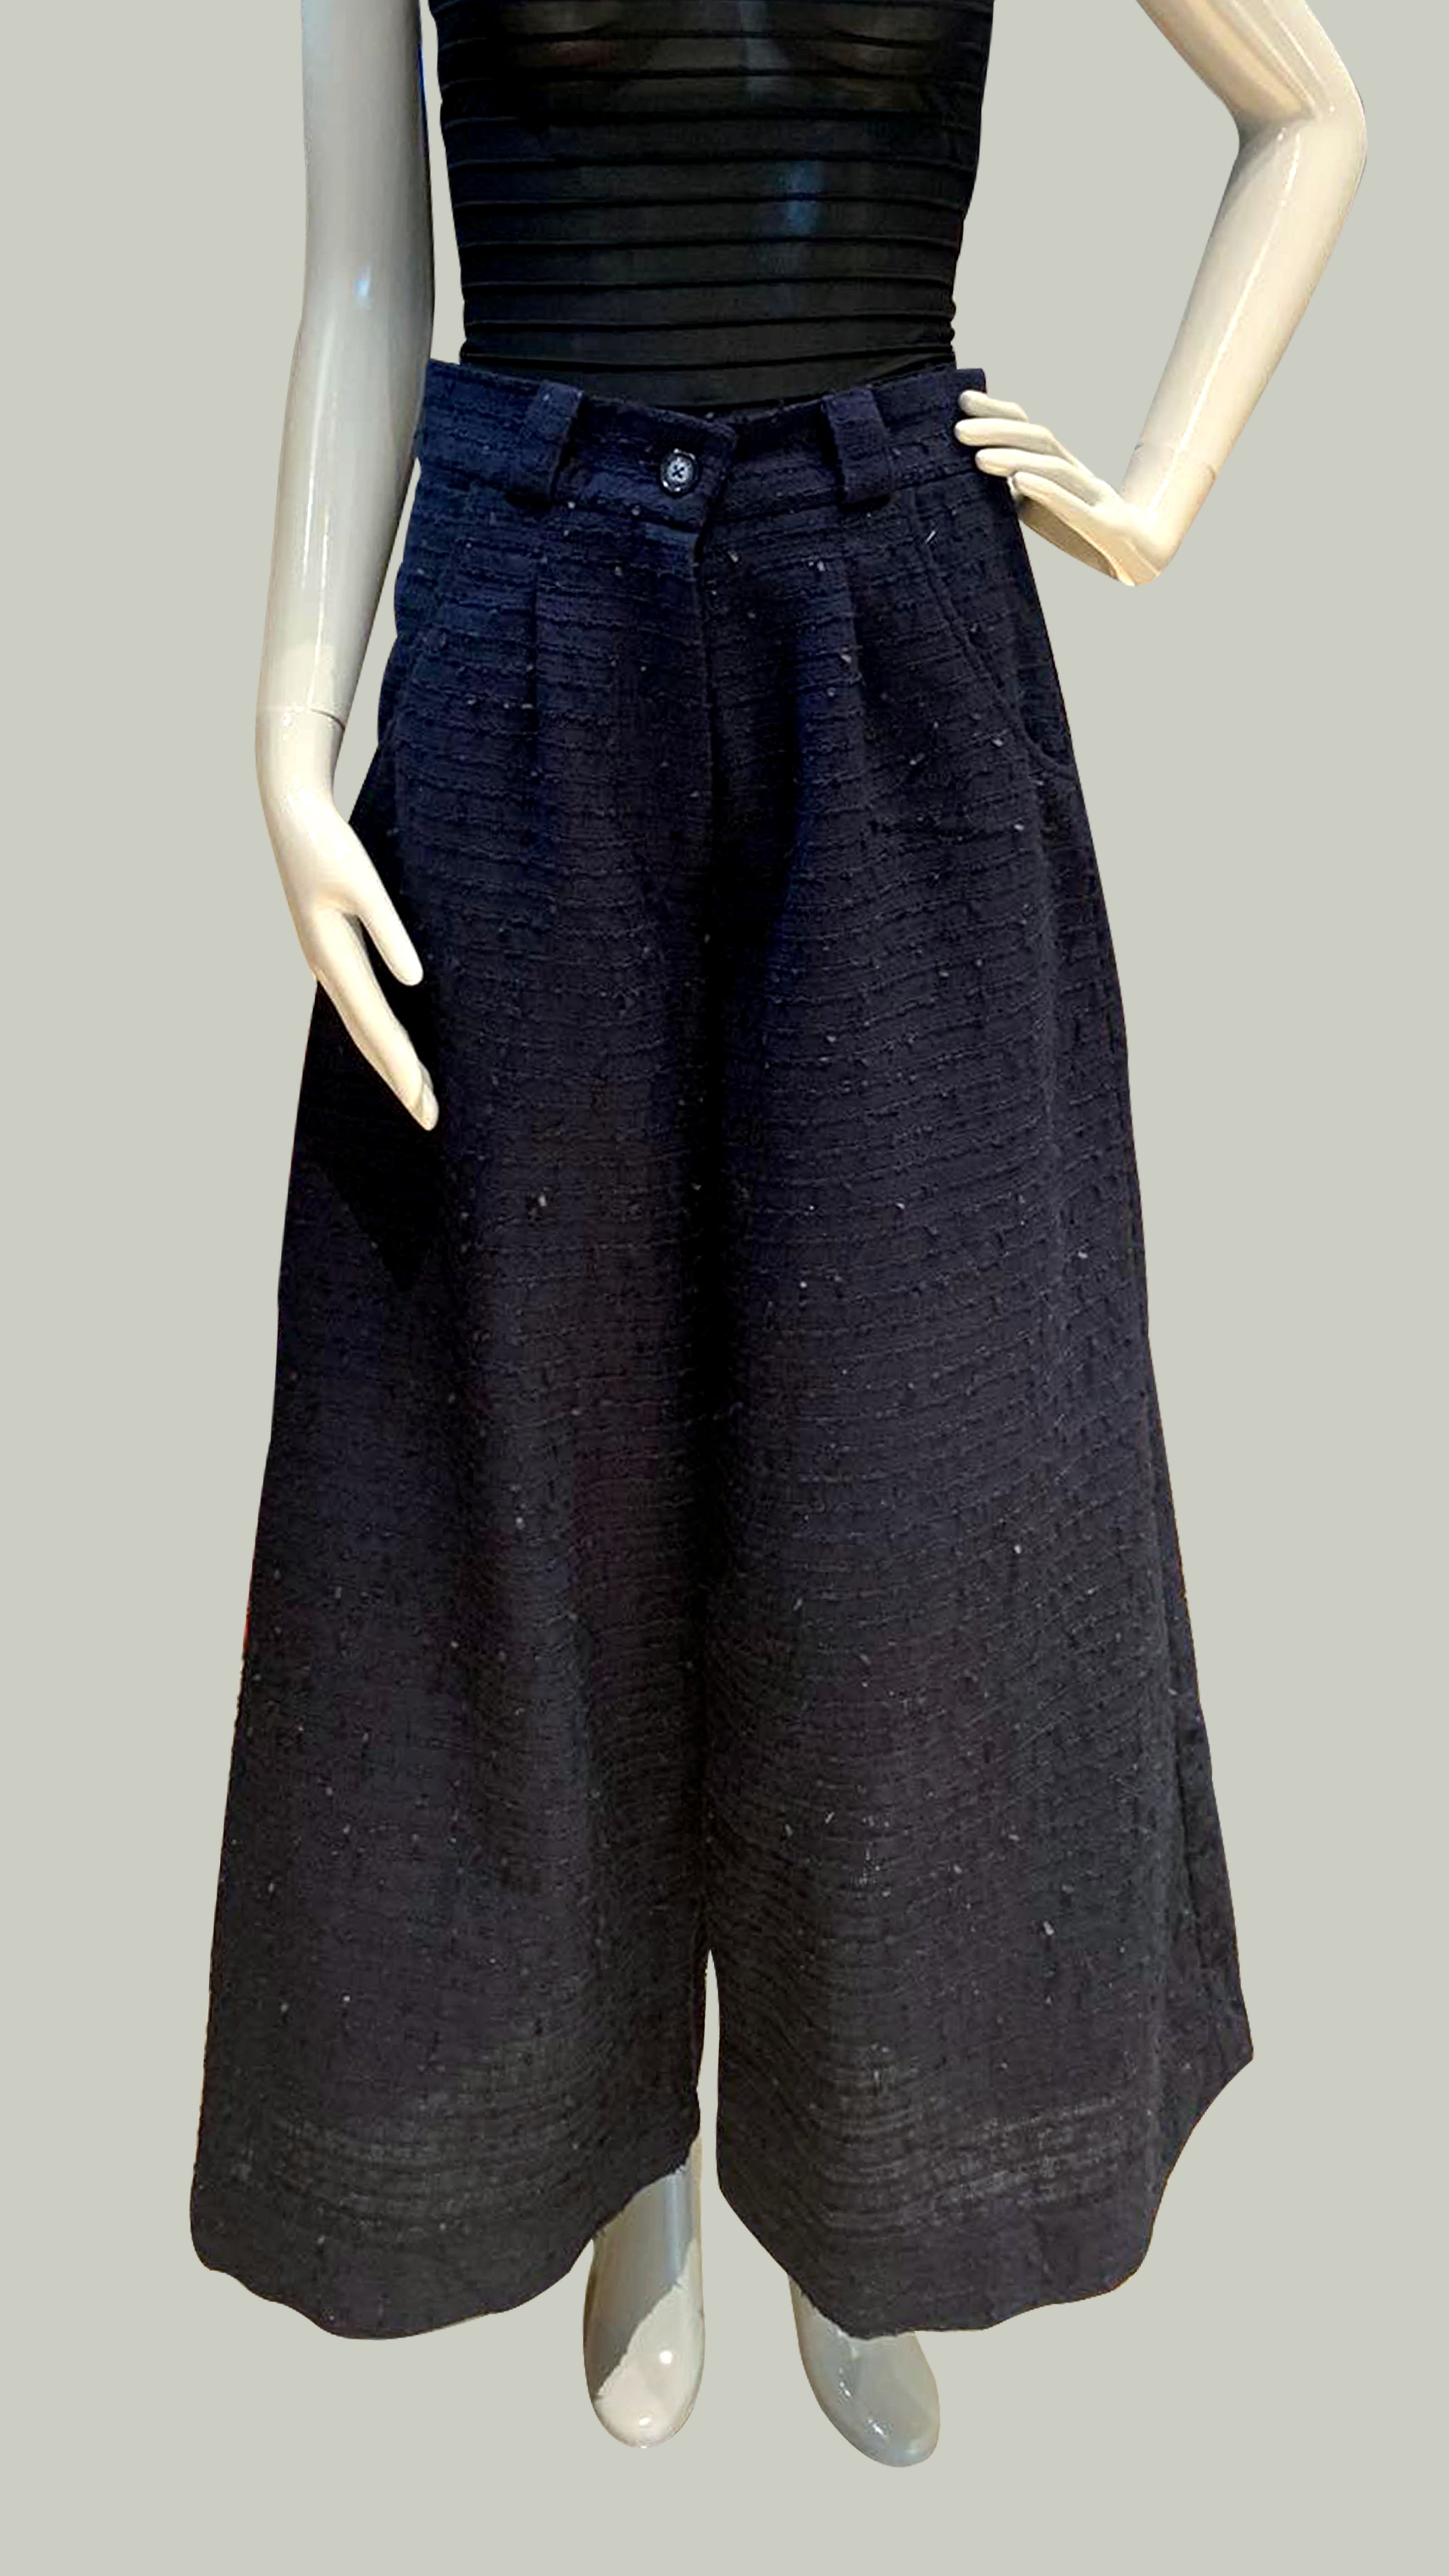 Flat Waistband Wide Hem Pants with Belt Loop in Blue Tweed